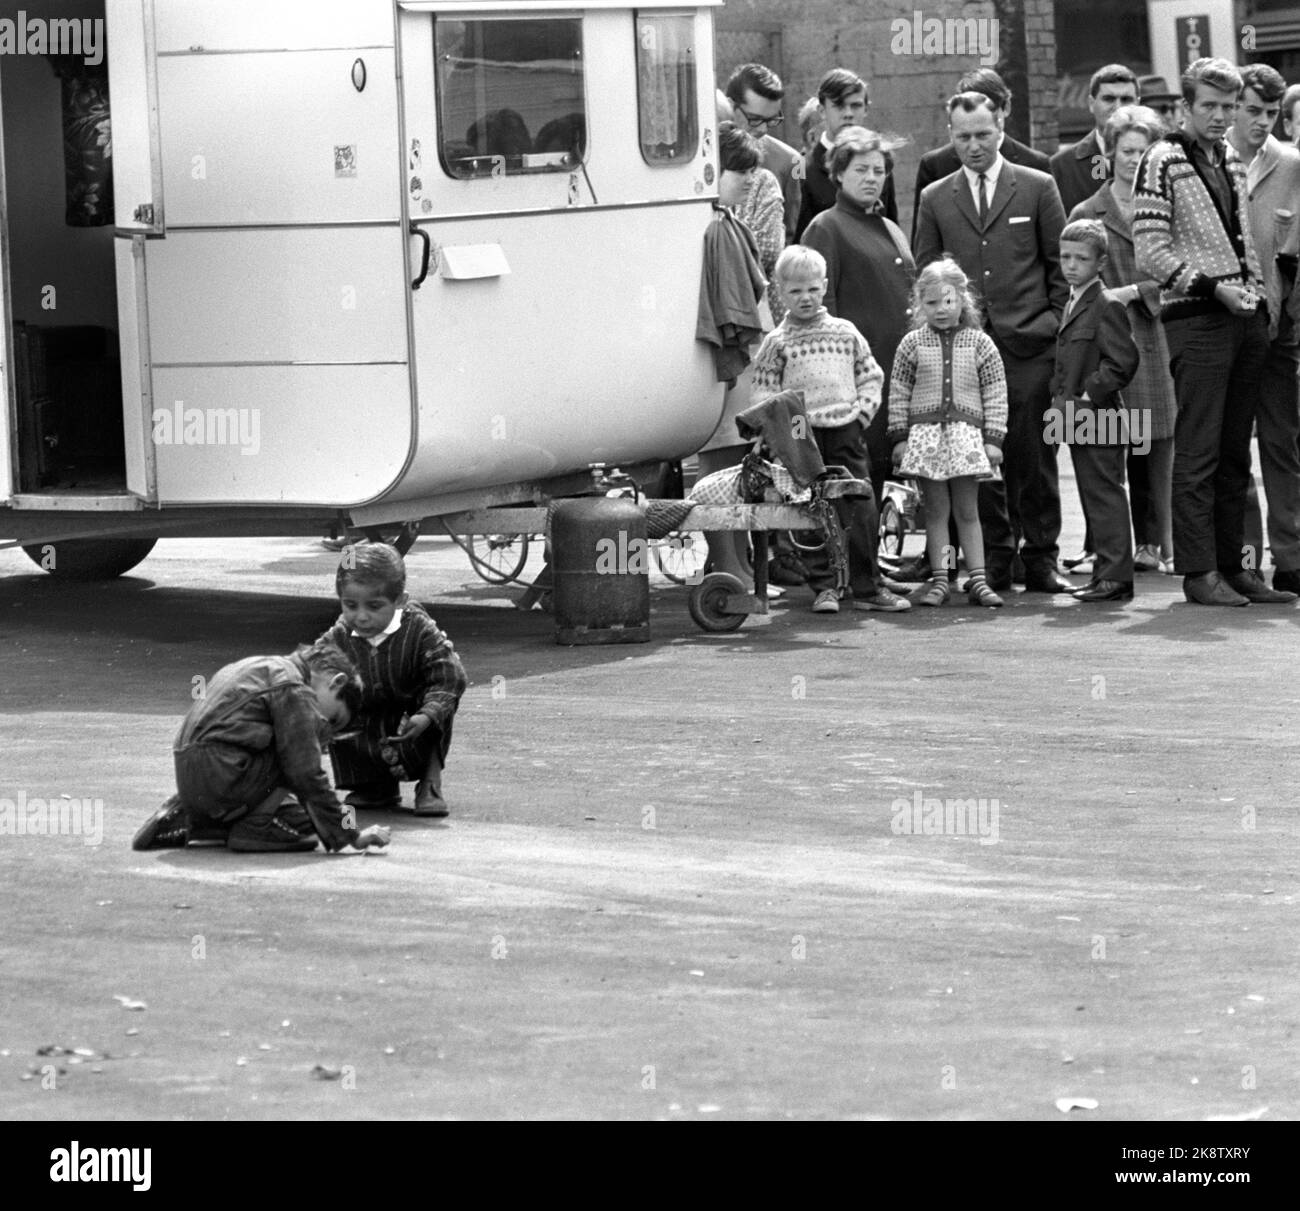 New Skan: Oslo Juni 1968 Fast hundert Zigeuner kamen im Frühjahr 1968 nach Oslo. Sie erhielten einen Platz auf dem Gasplot in Oslo East. Jeden Tag gibt es Menschen, die sie anschauen wollen. Zwei Kinder spielen vor einem Wohnwagen. Foto: Sverre A. Børretzen / Aktuell / NTB Stockfoto